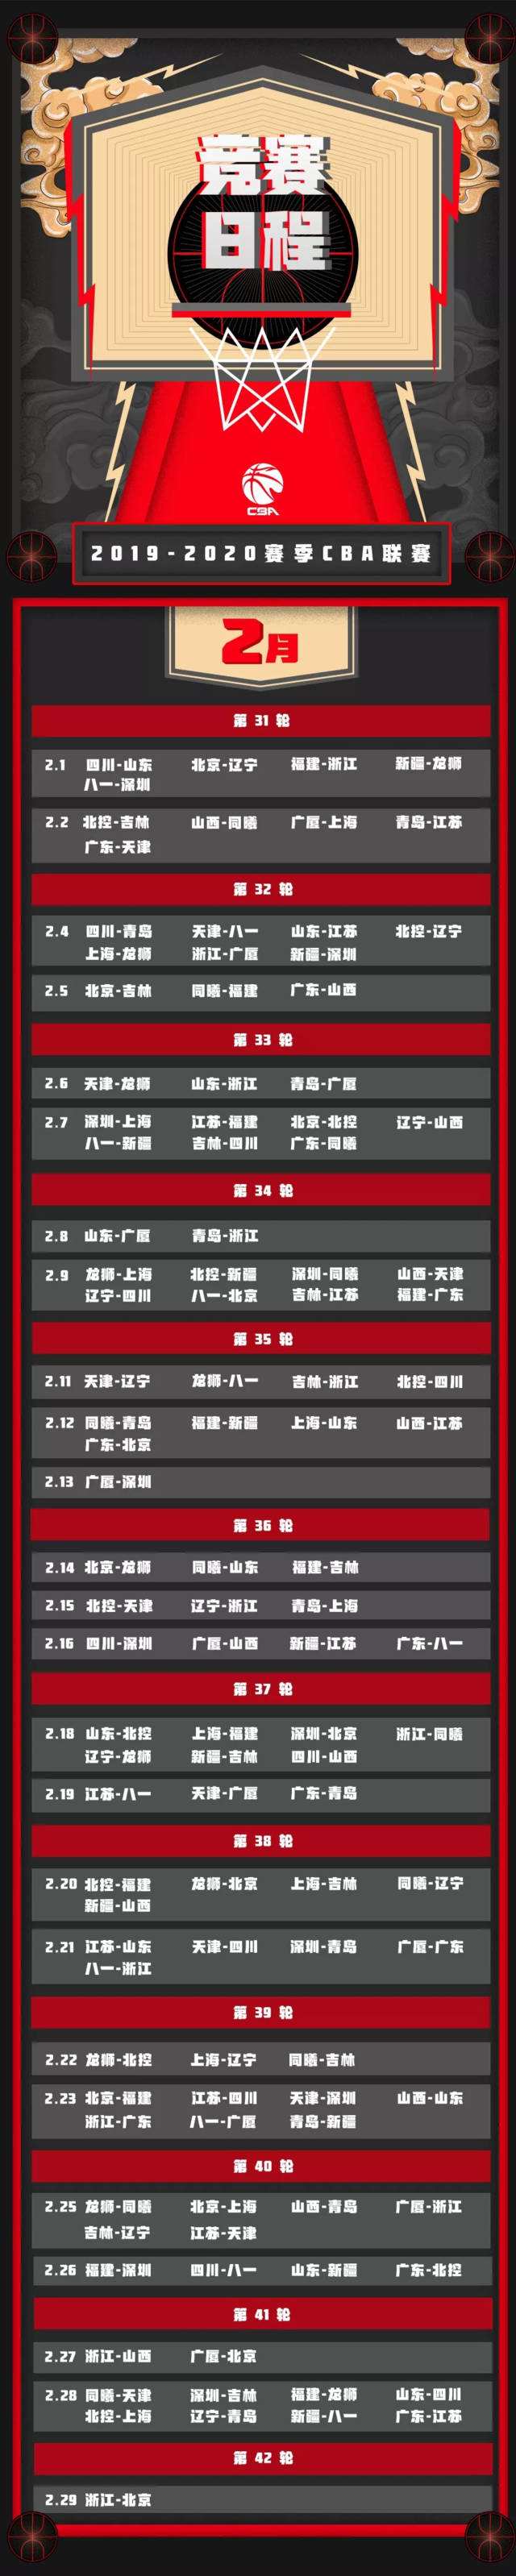 cba最新赛程时间表，cba最新赛程时间表广东！